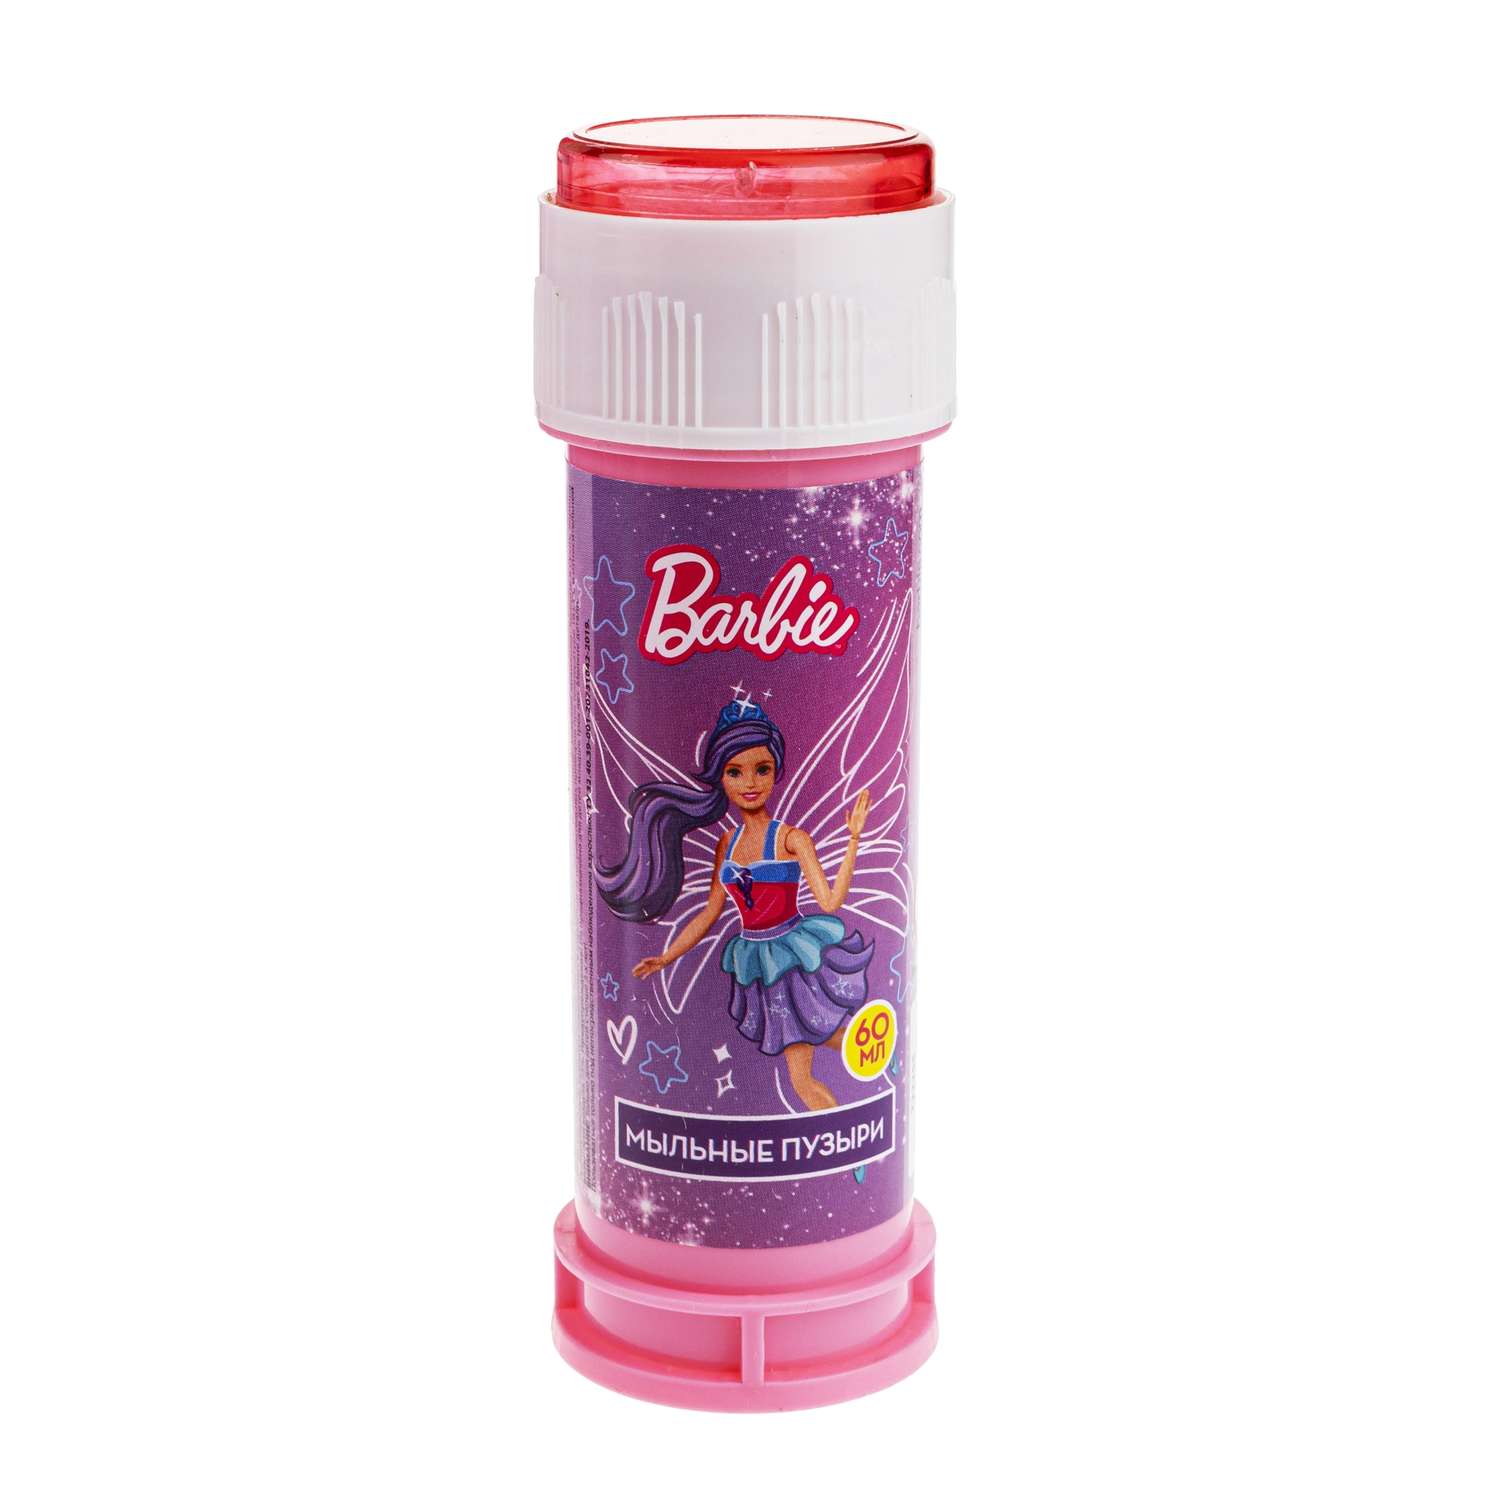 Мыльные пузыри 1TOY Barbie 60мл Т22255 в ассортименте - фото 2